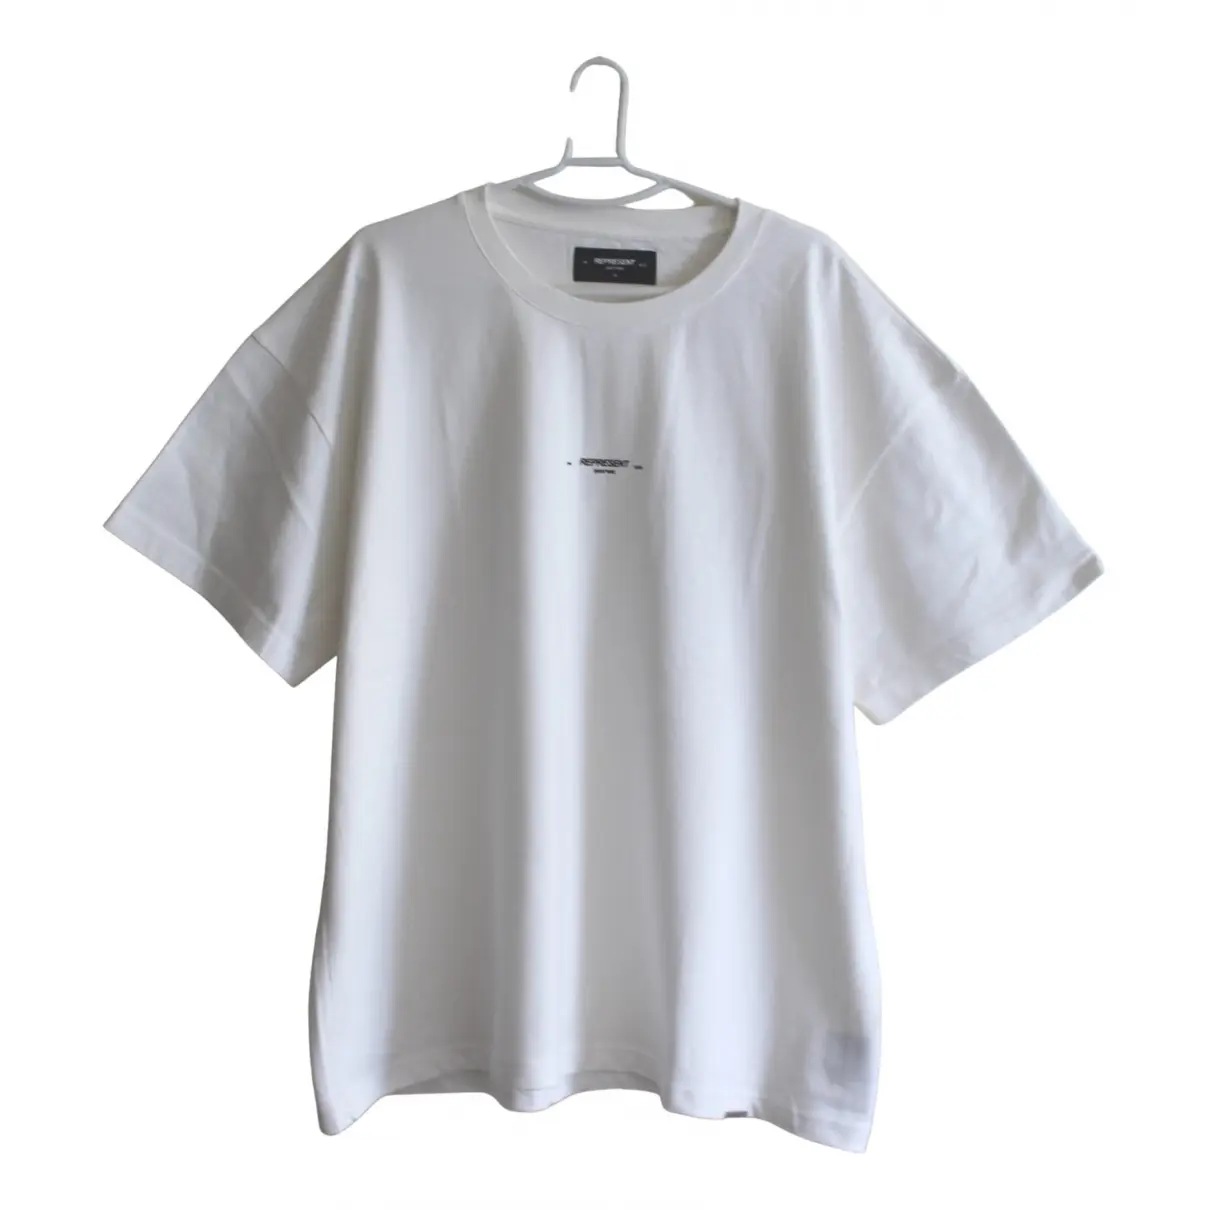 White Cotton T-shirt Represent